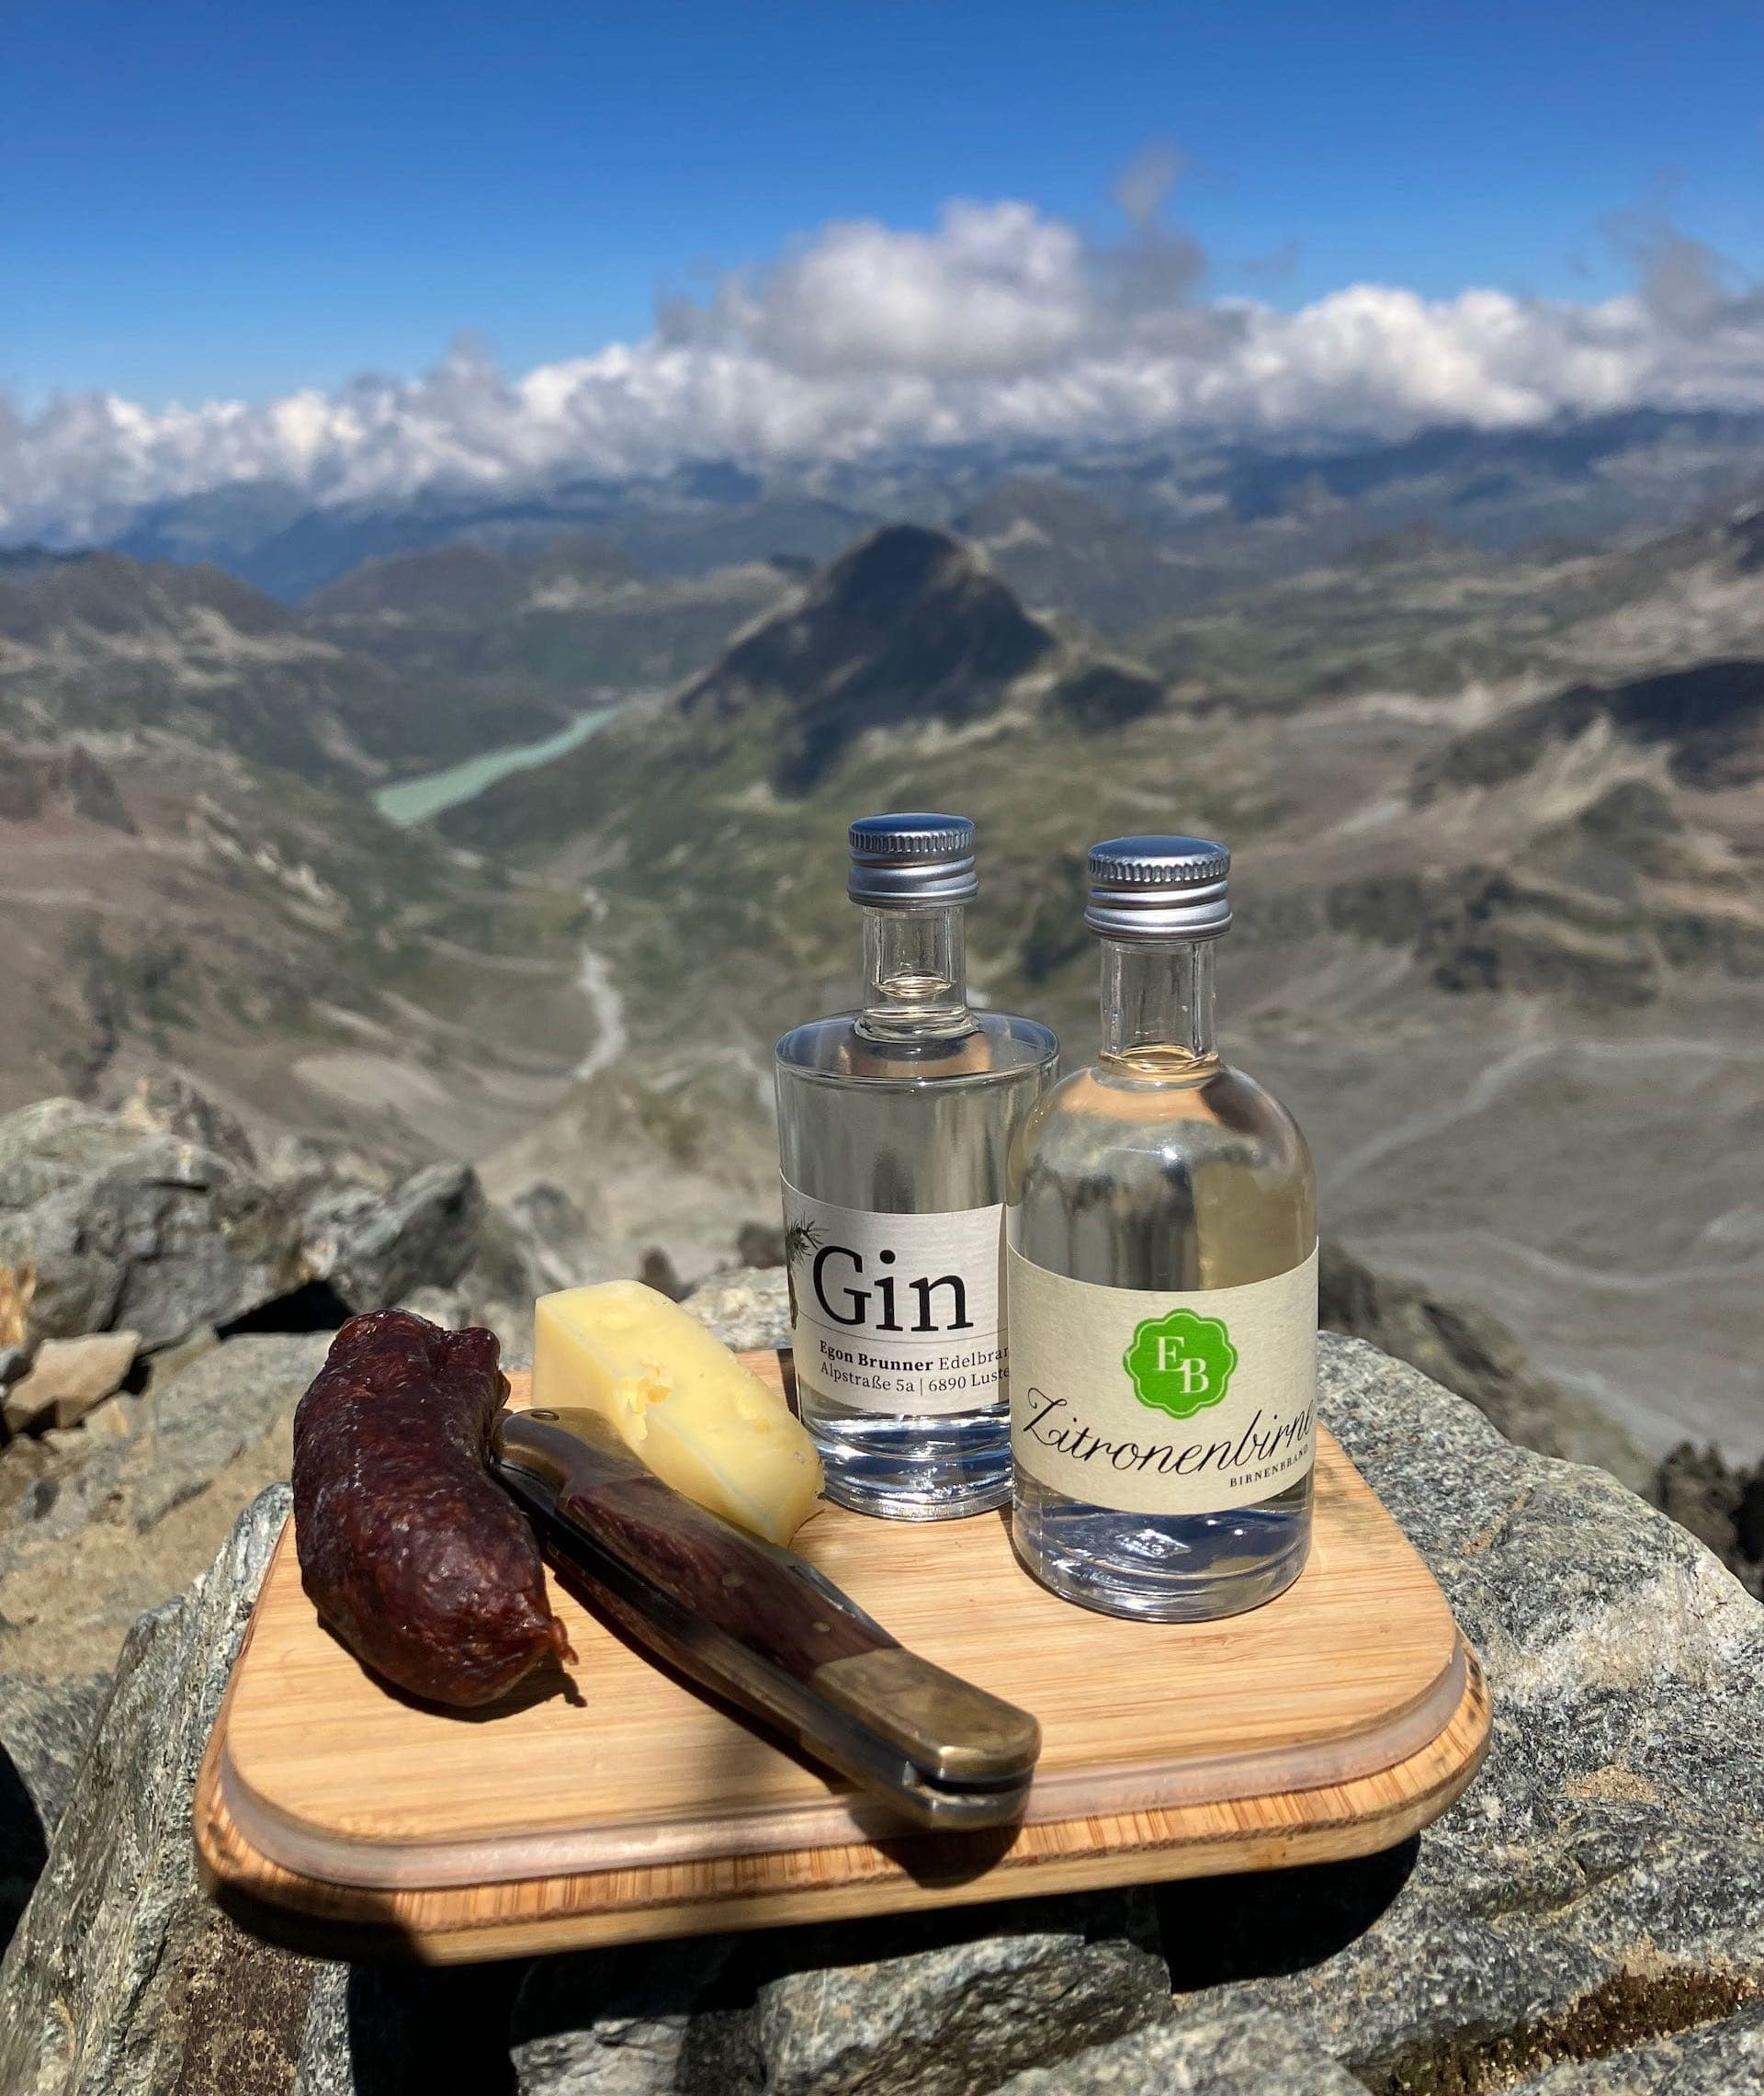 Die Zitronenbirne und der Gin der Destillerie Brunner im Miniflaschenformat auf dem Piz Buin mit Jause und Ausblick auf die Silvretta.